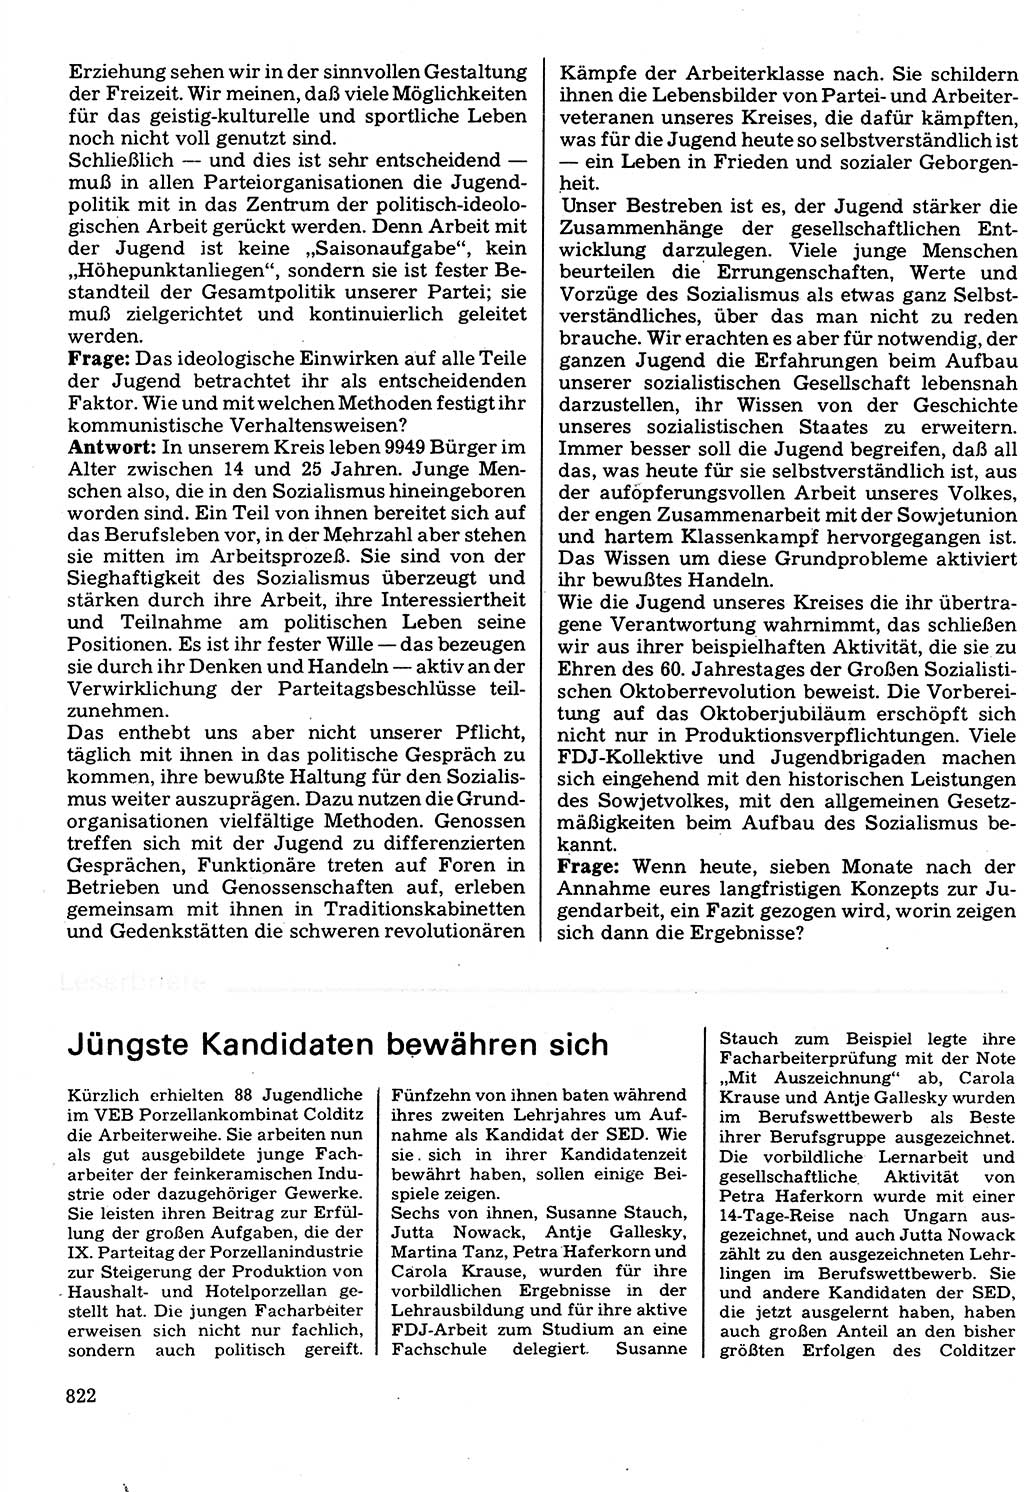 Neuer Weg (NW), Organ des Zentralkomitees (ZK) der SED (Sozialistische Einheitspartei Deutschlands) für Fragen des Parteilebens, 32. Jahrgang [Deutsche Demokratische Republik (DDR)] 1977, Seite 822 (NW ZK SED DDR 1977, S. 822)